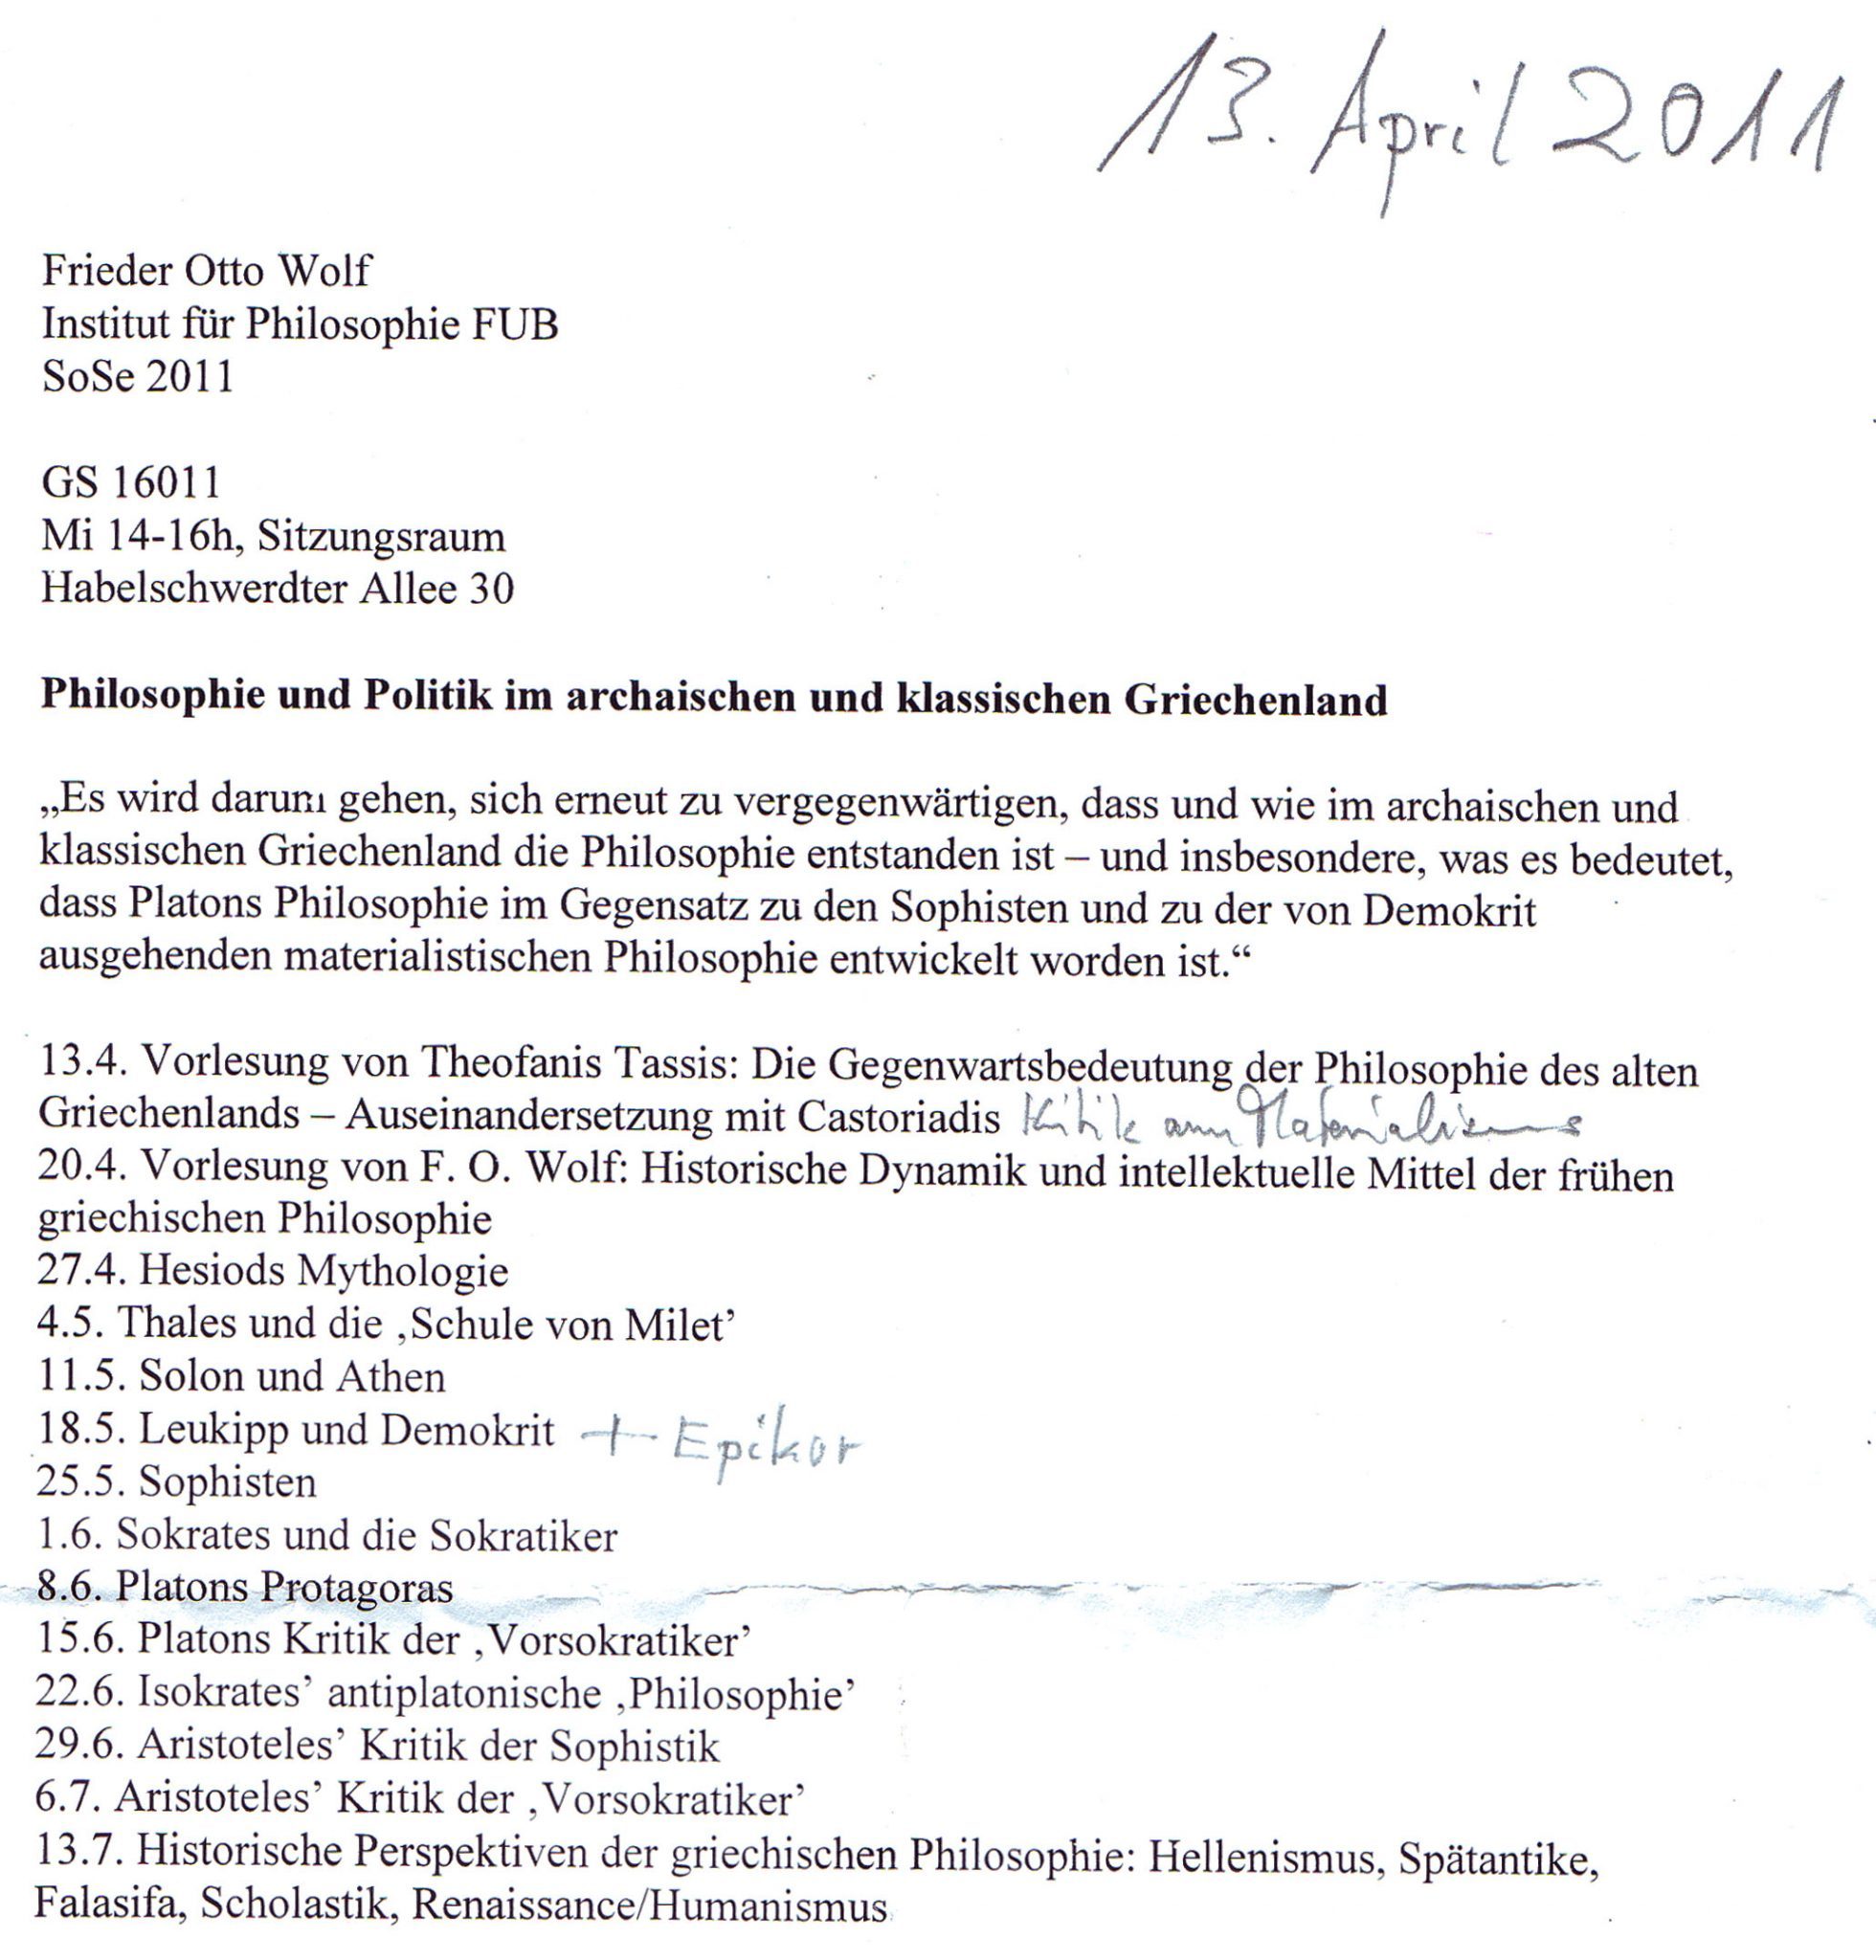 Philosophie und Politik im archaischen und klassischen Griechenland, SoSe2011, Frieder Otto Wolf